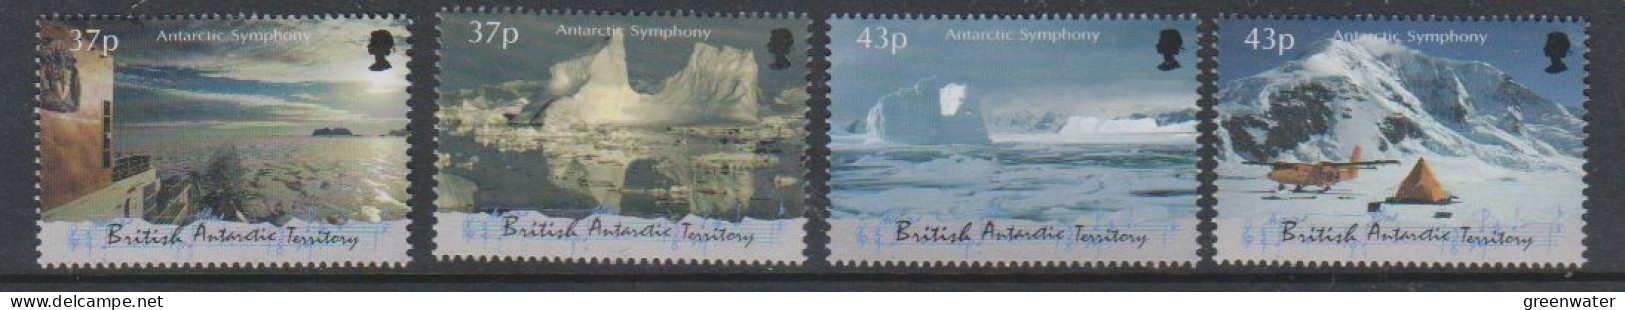 British Antarctic Territory (BAT) 2000 Antarctic Symphony 4v** Mnh (59512A) - Neufs